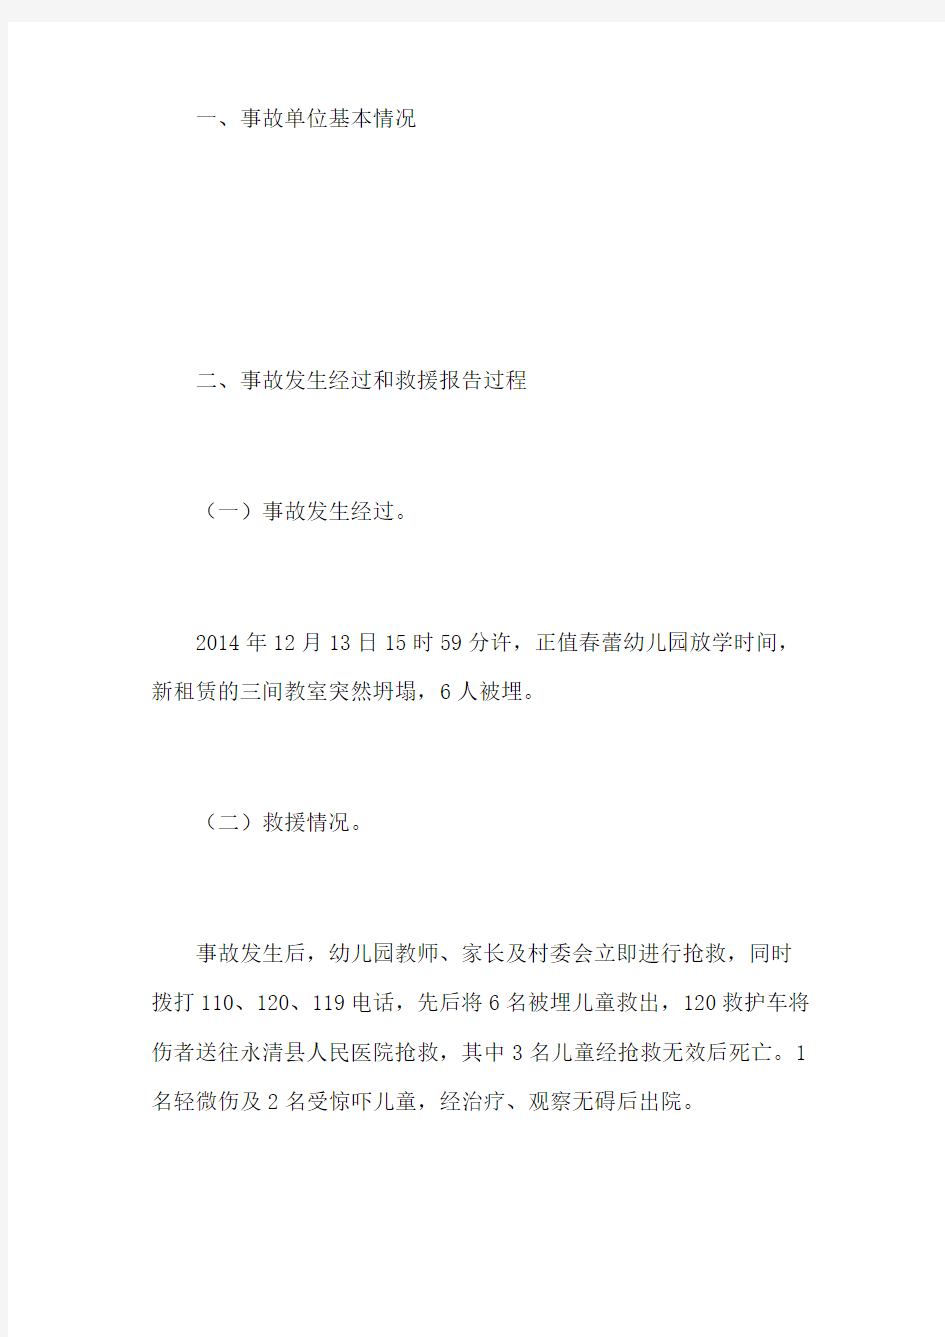 永清县刘街春蕾幼儿园“”校舍坍塌事故调查报告